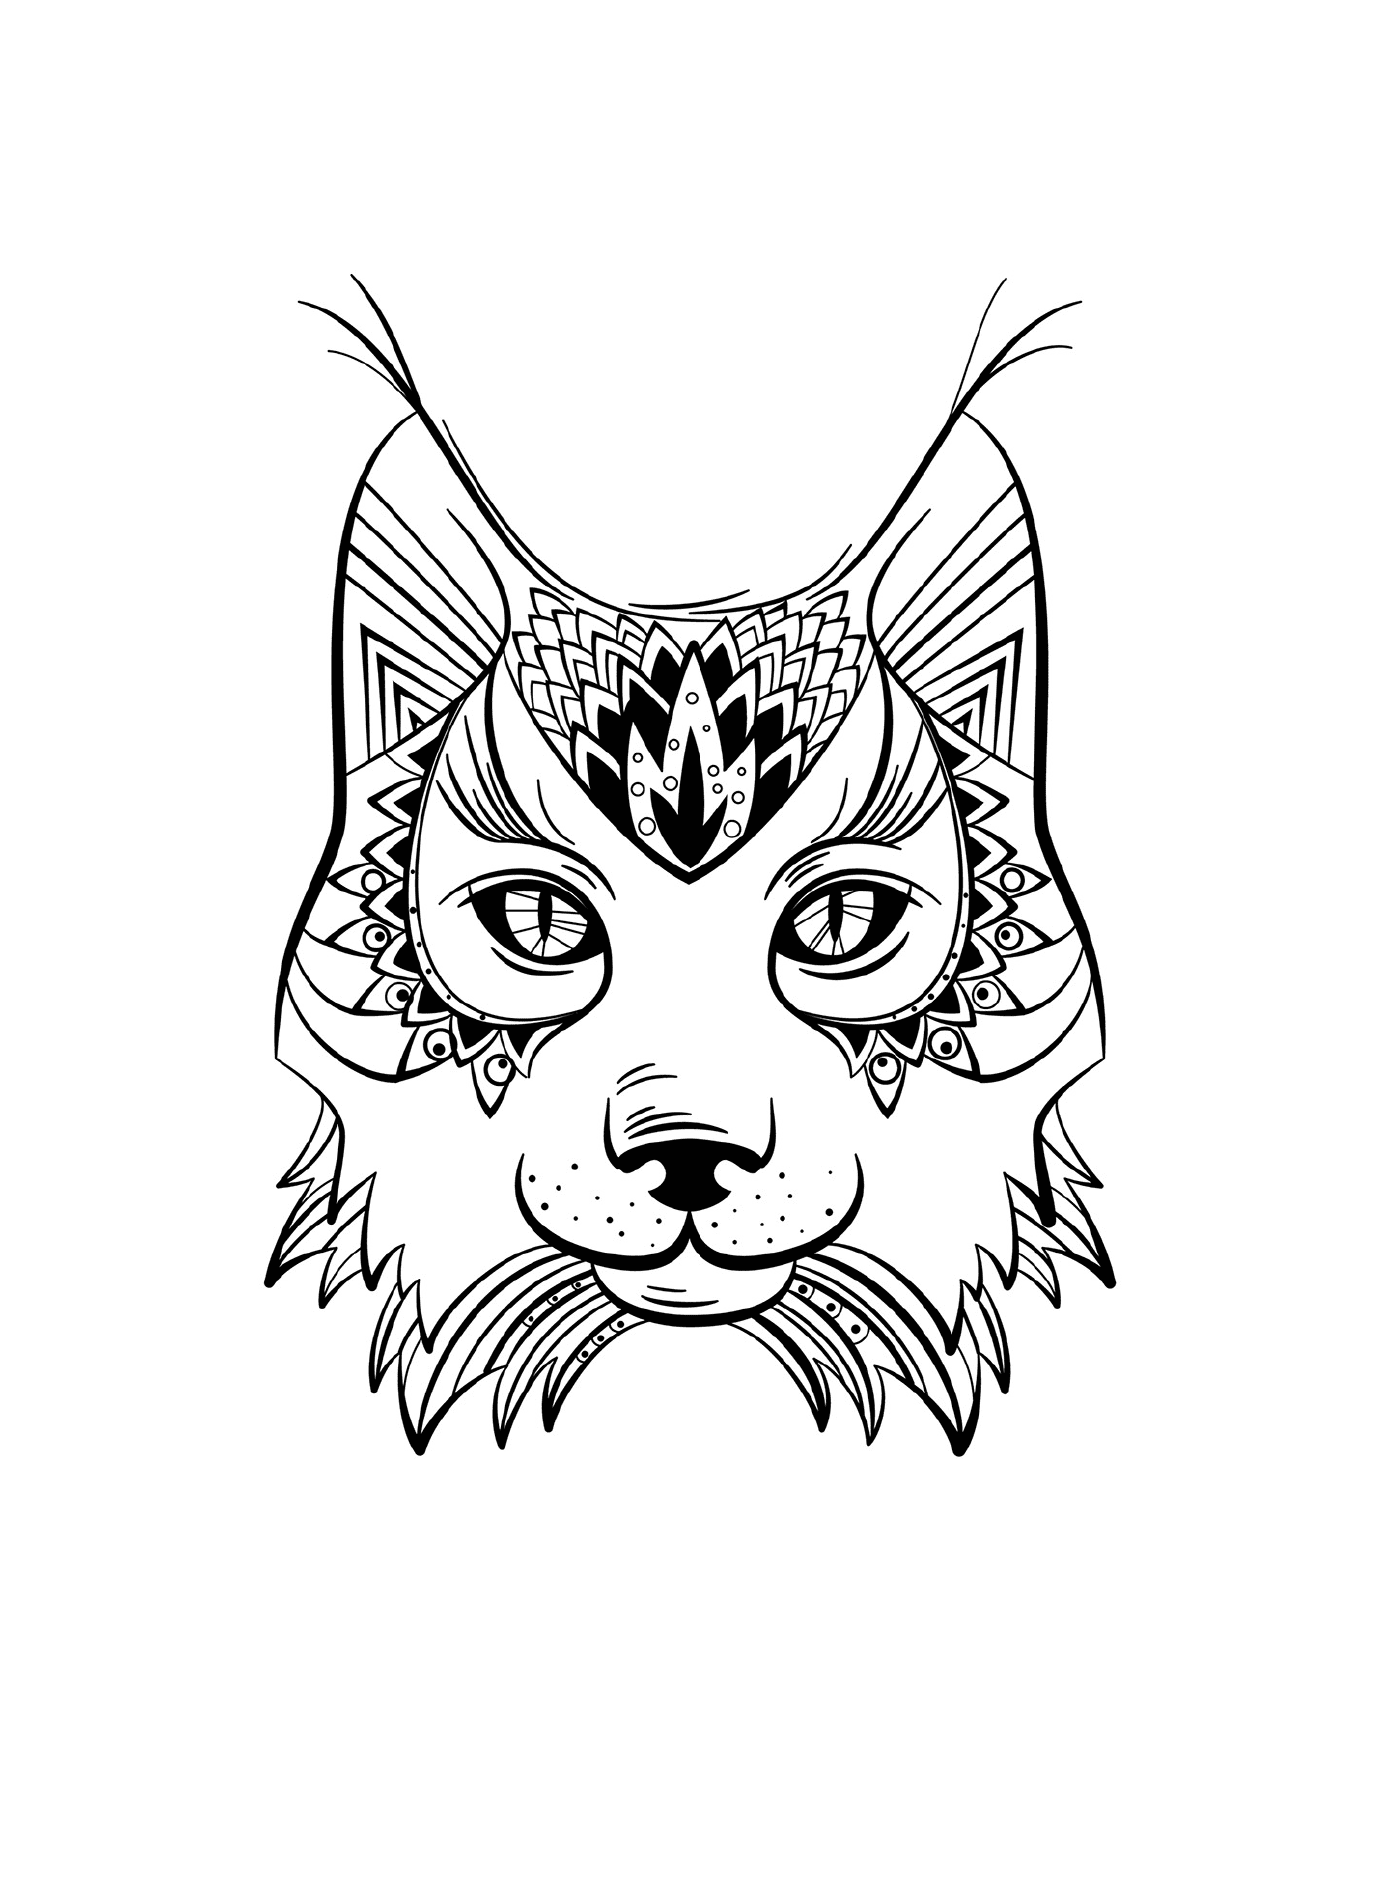  Lynx con cabeza de gato 